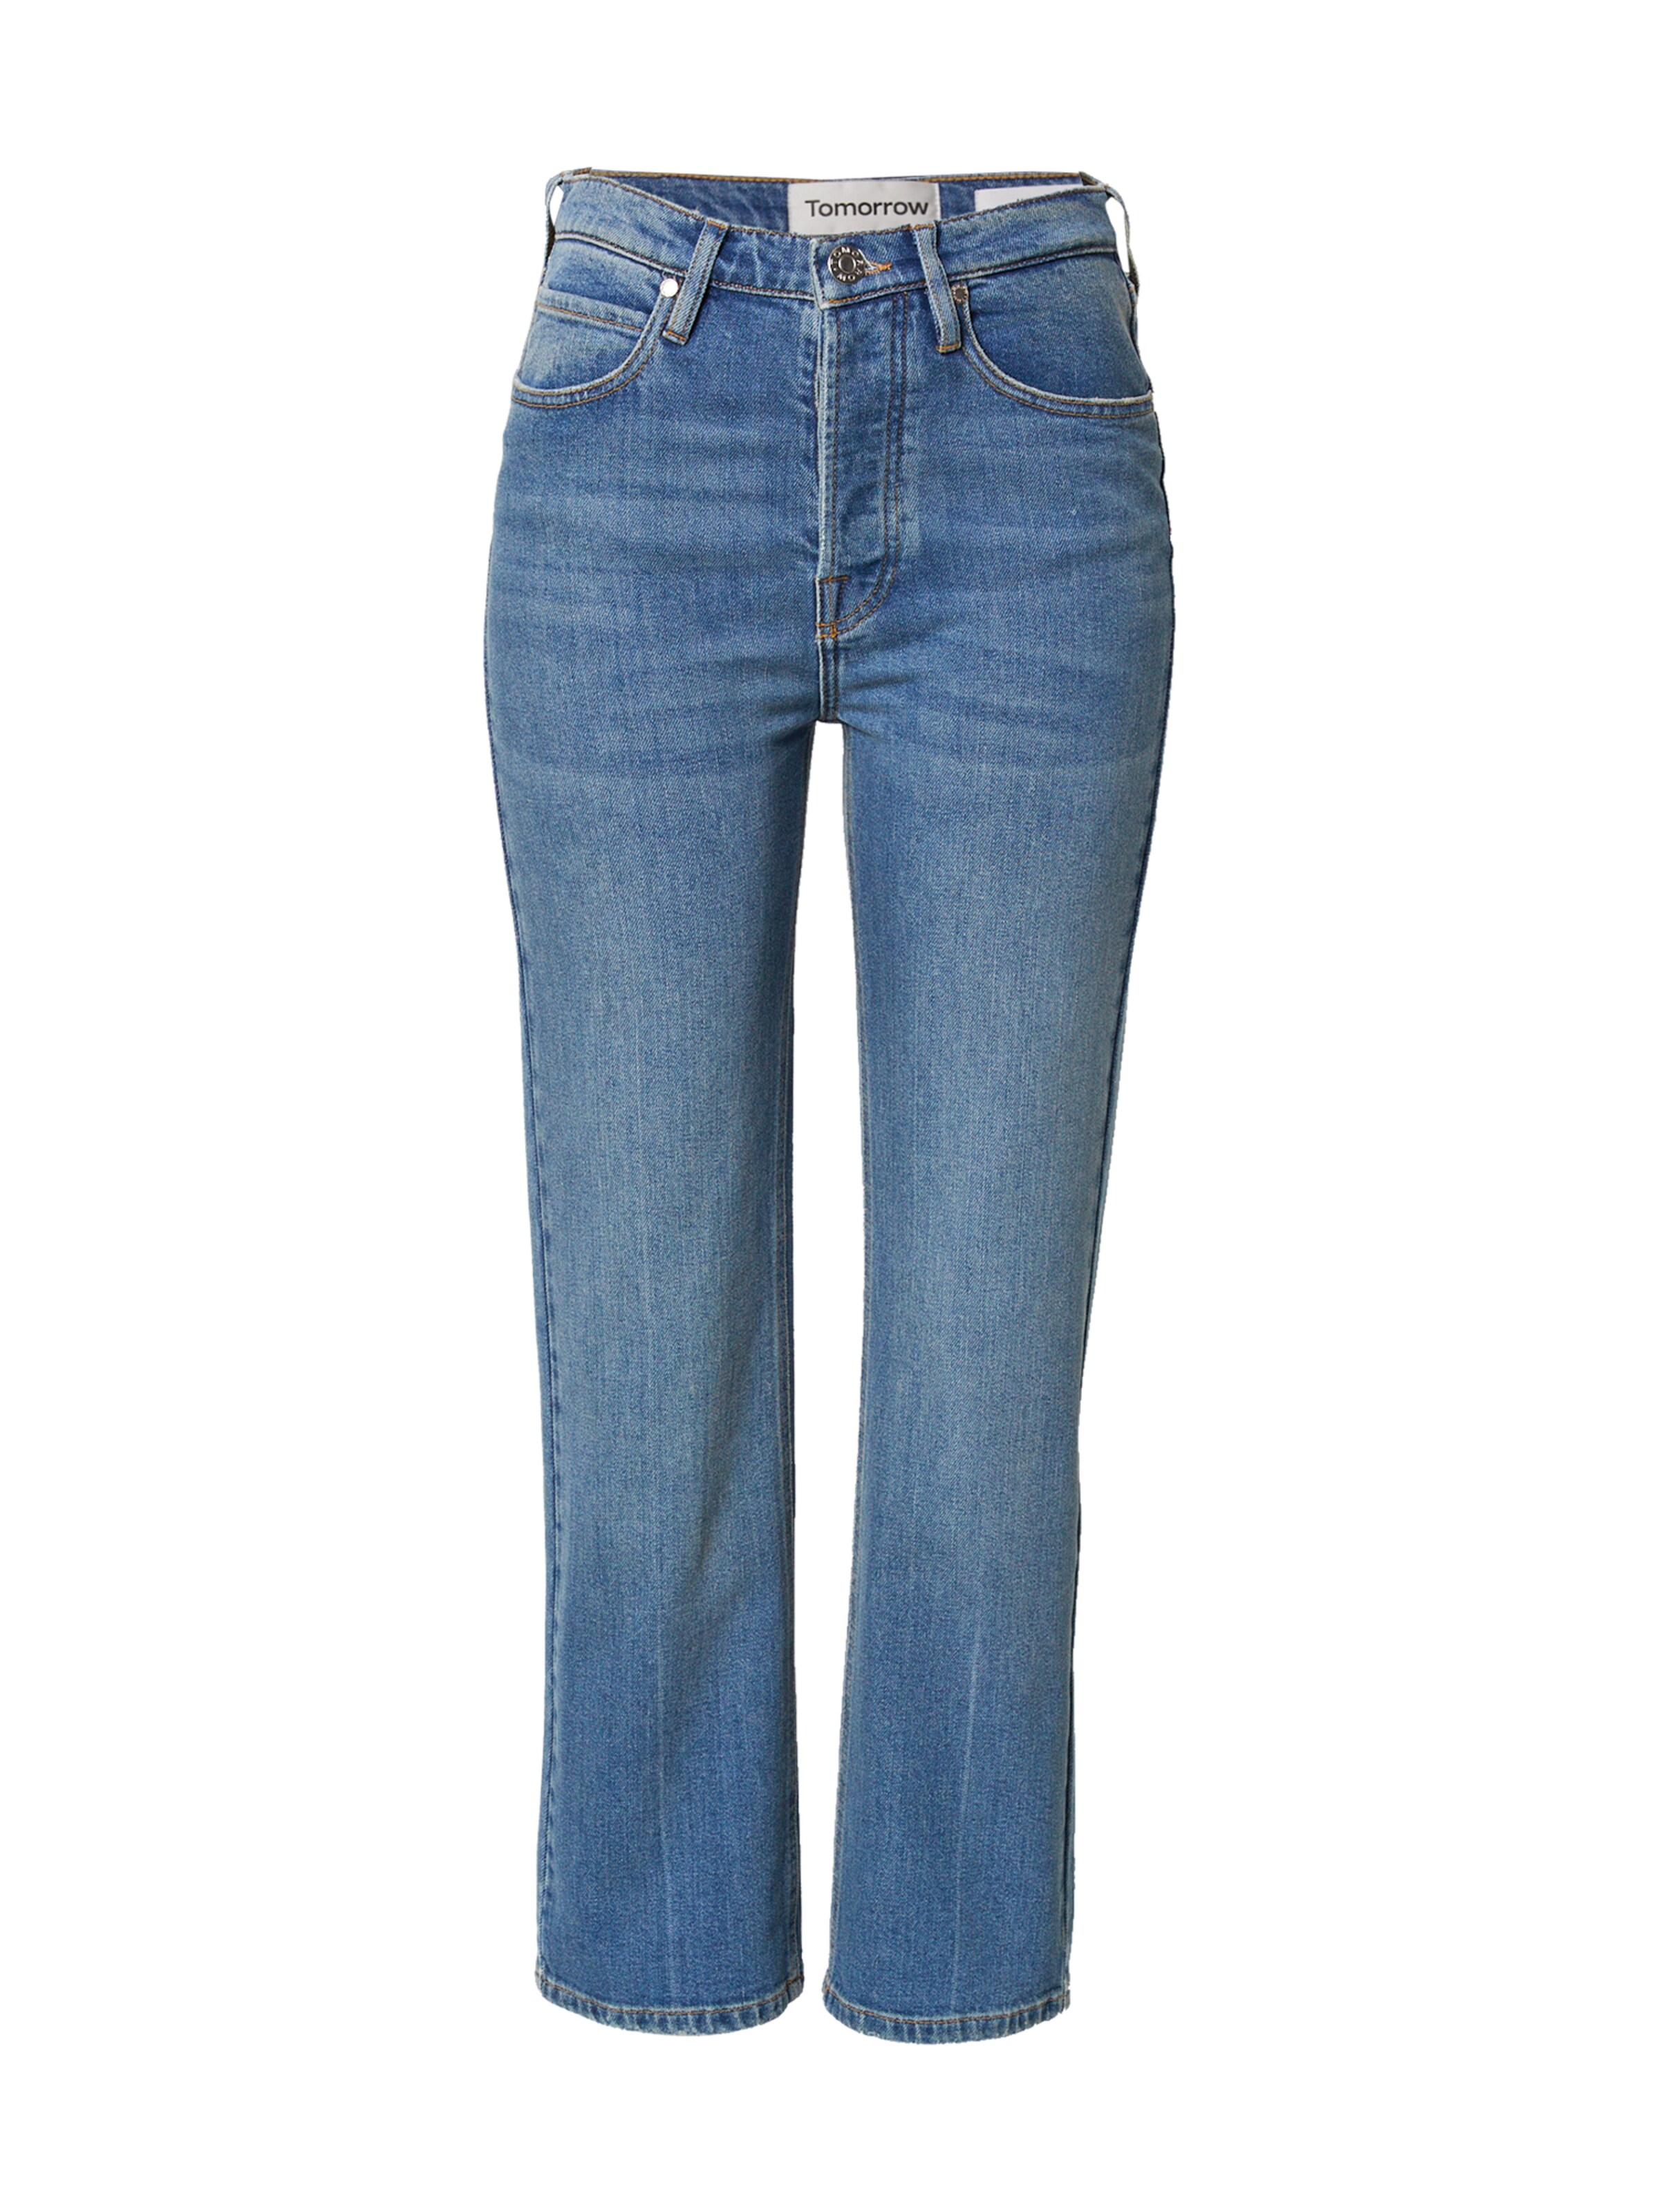 Più sostenibile cLSTG TOMORROW Jeans Marston in Blu 